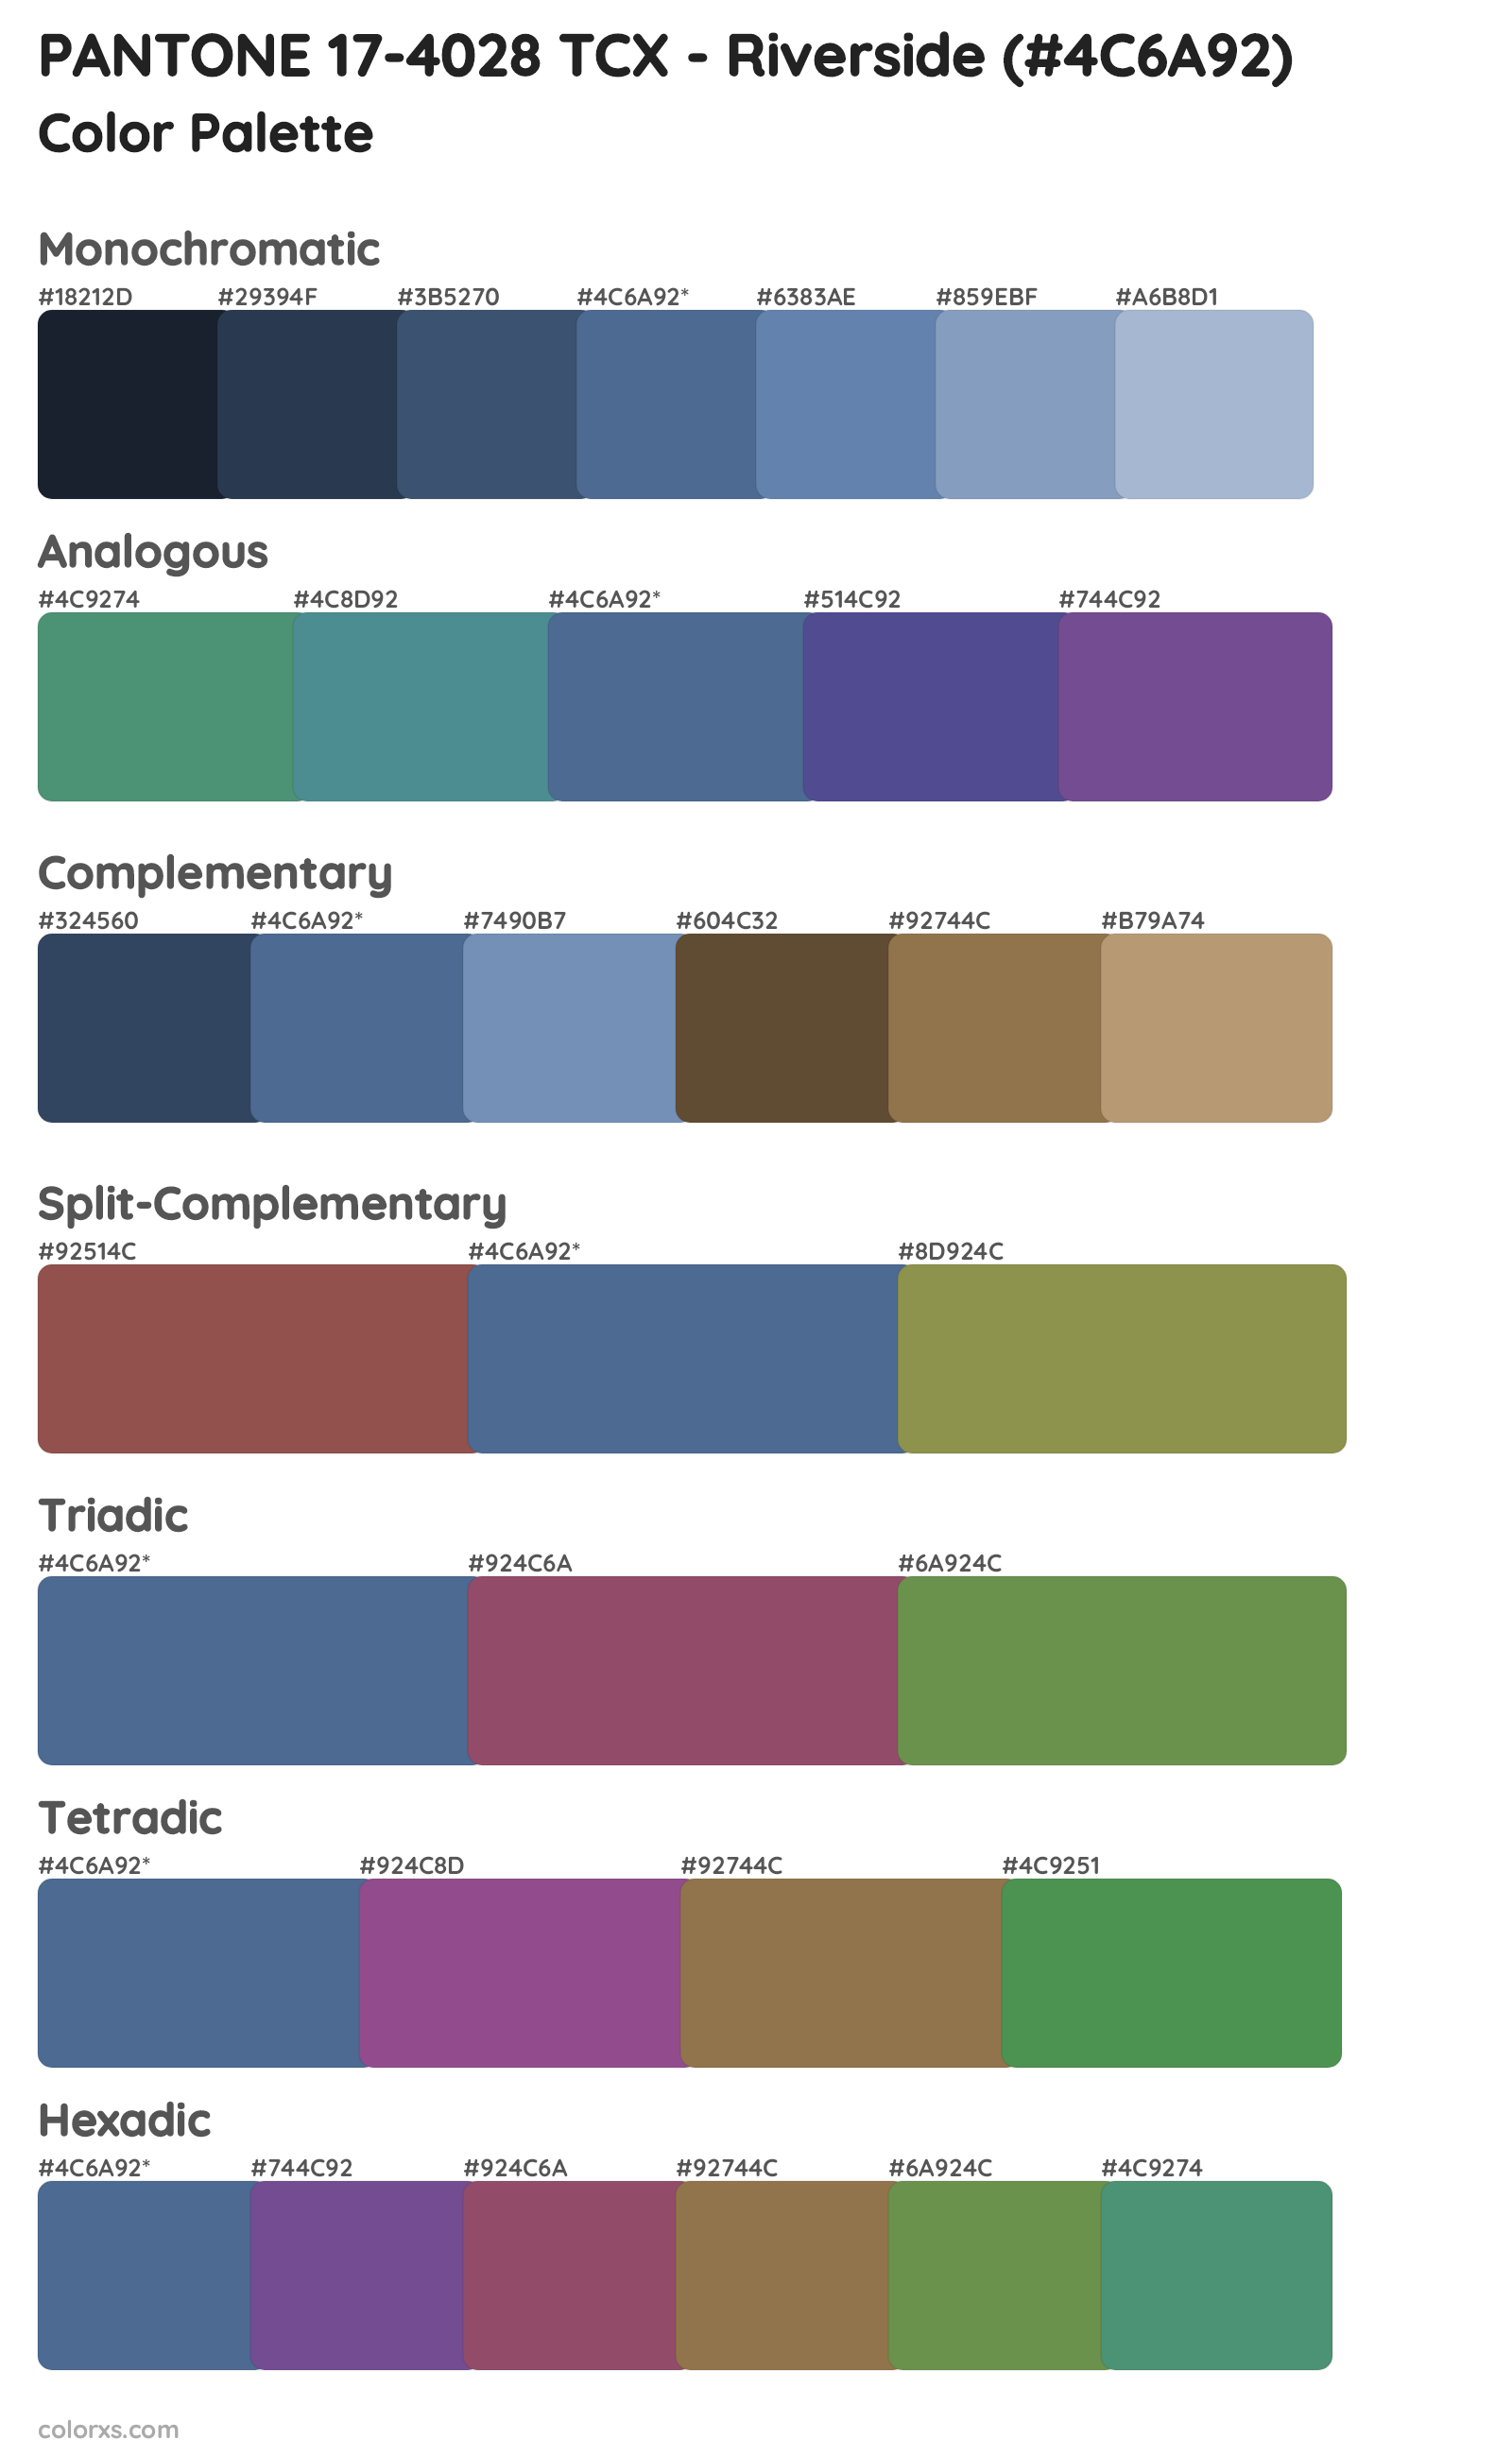 PANTONE 17-4028 TCX - Riverside Color Scheme Palettes